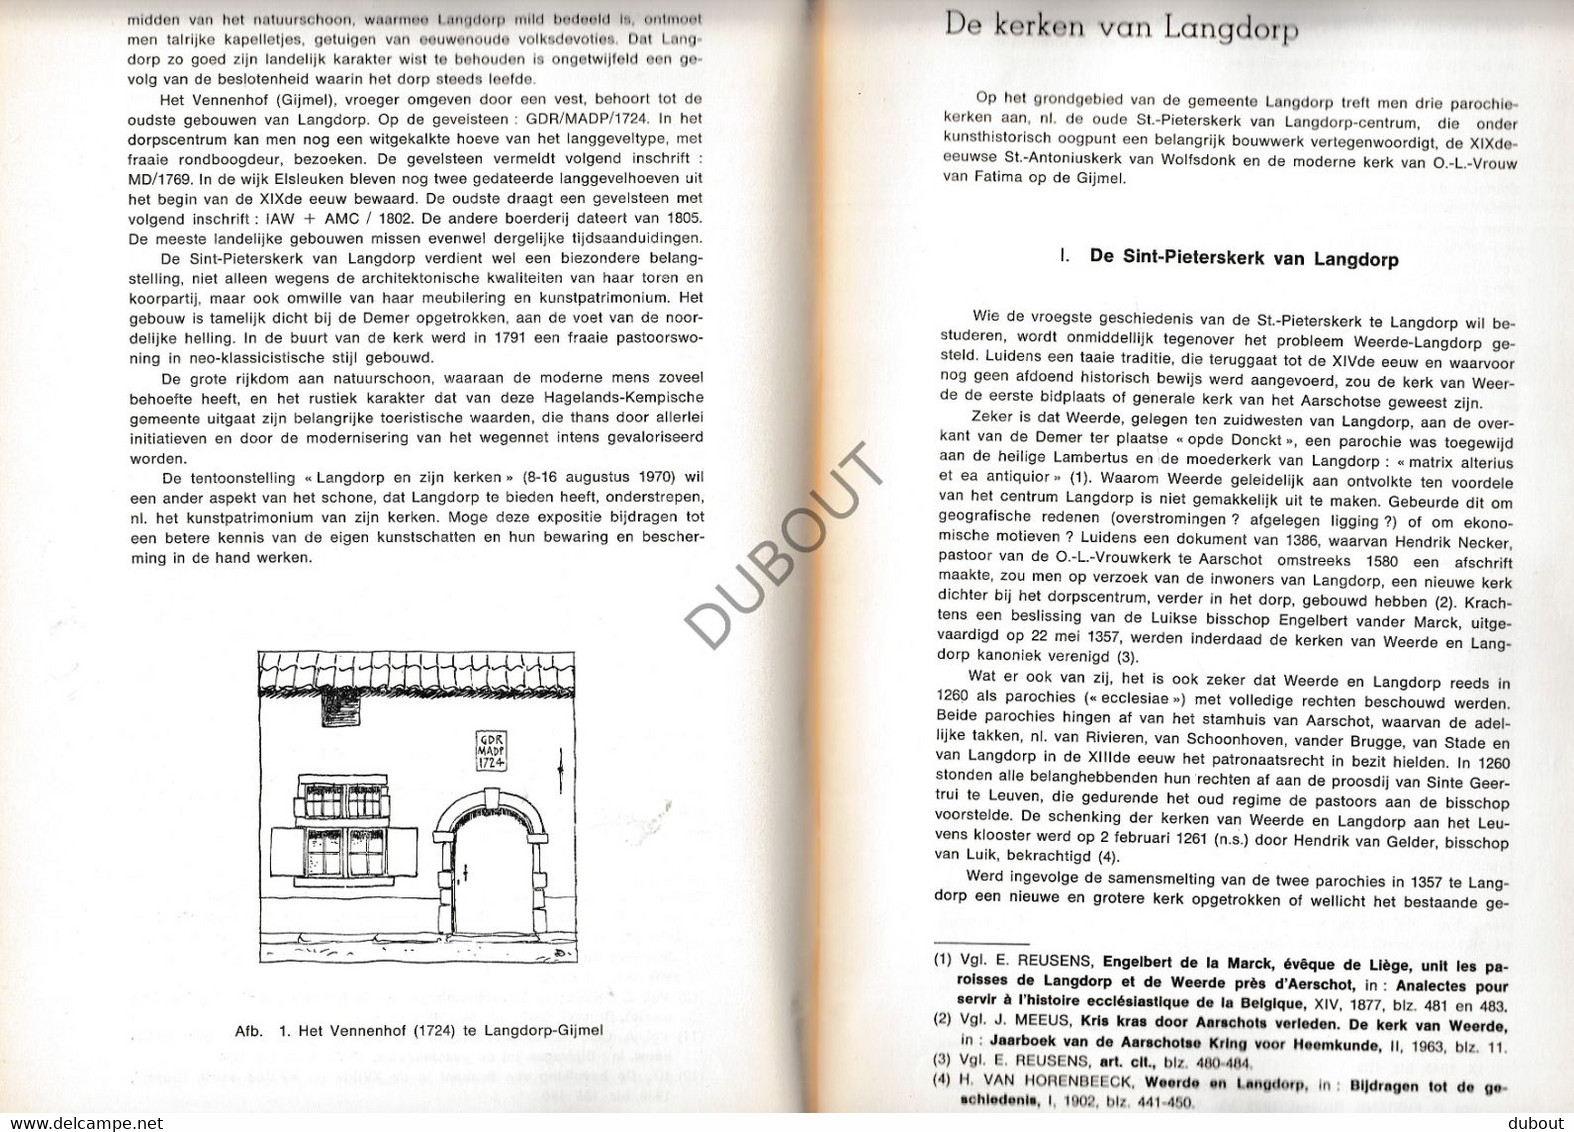 Langdorp/Aarschot - Langdorp En Zijn Kerken - J. Gerits - 1970 - Tentoonstelling Kataloog Met Illustraties (V1906) - Antiquariat